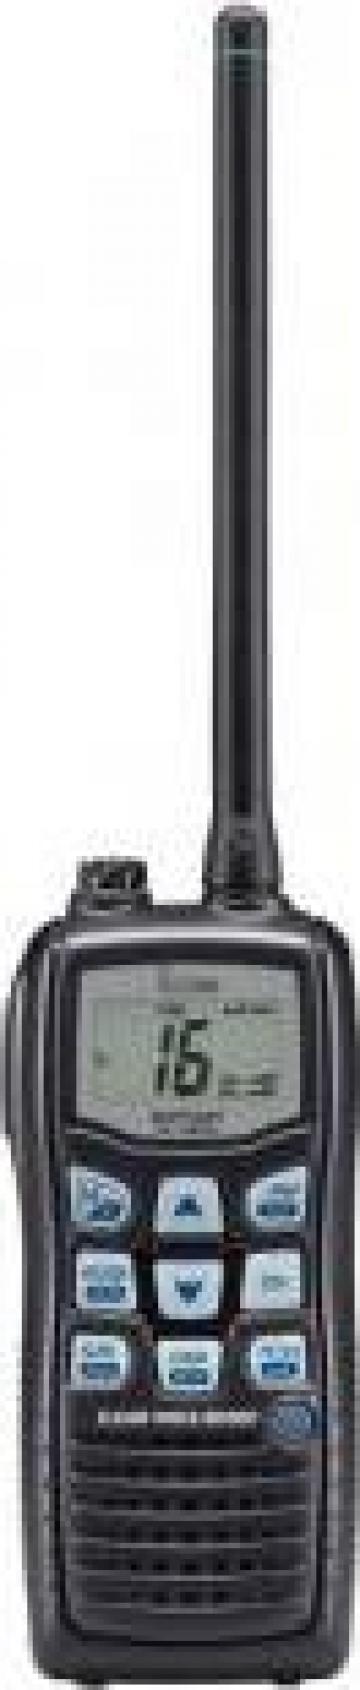 Reprogramari radiotelefoane VHF